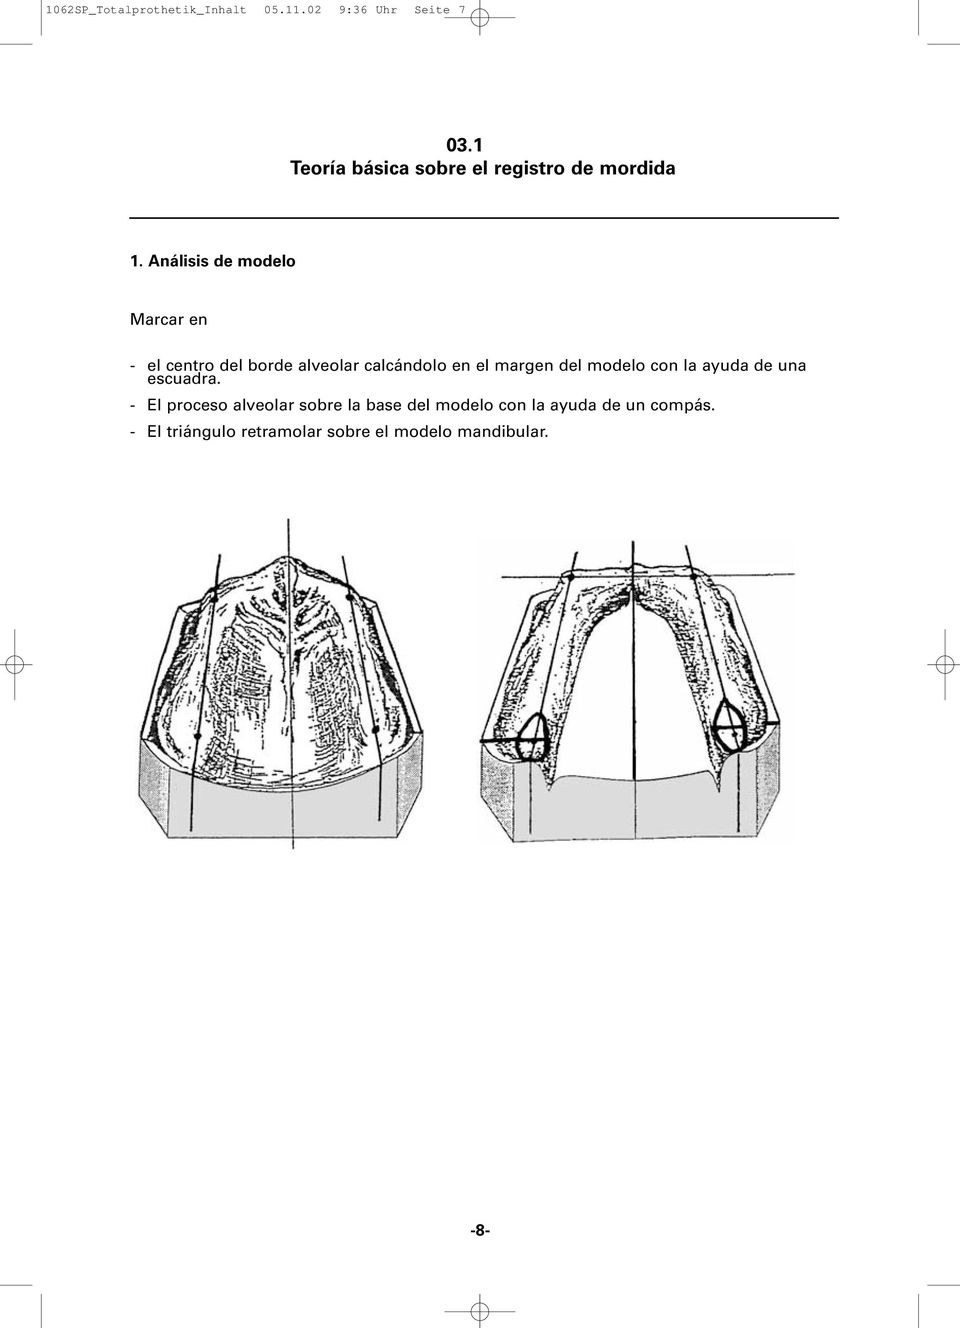 Análisis de modelo Marcar en - el centro del borde alveolar calcándolo en el margen del